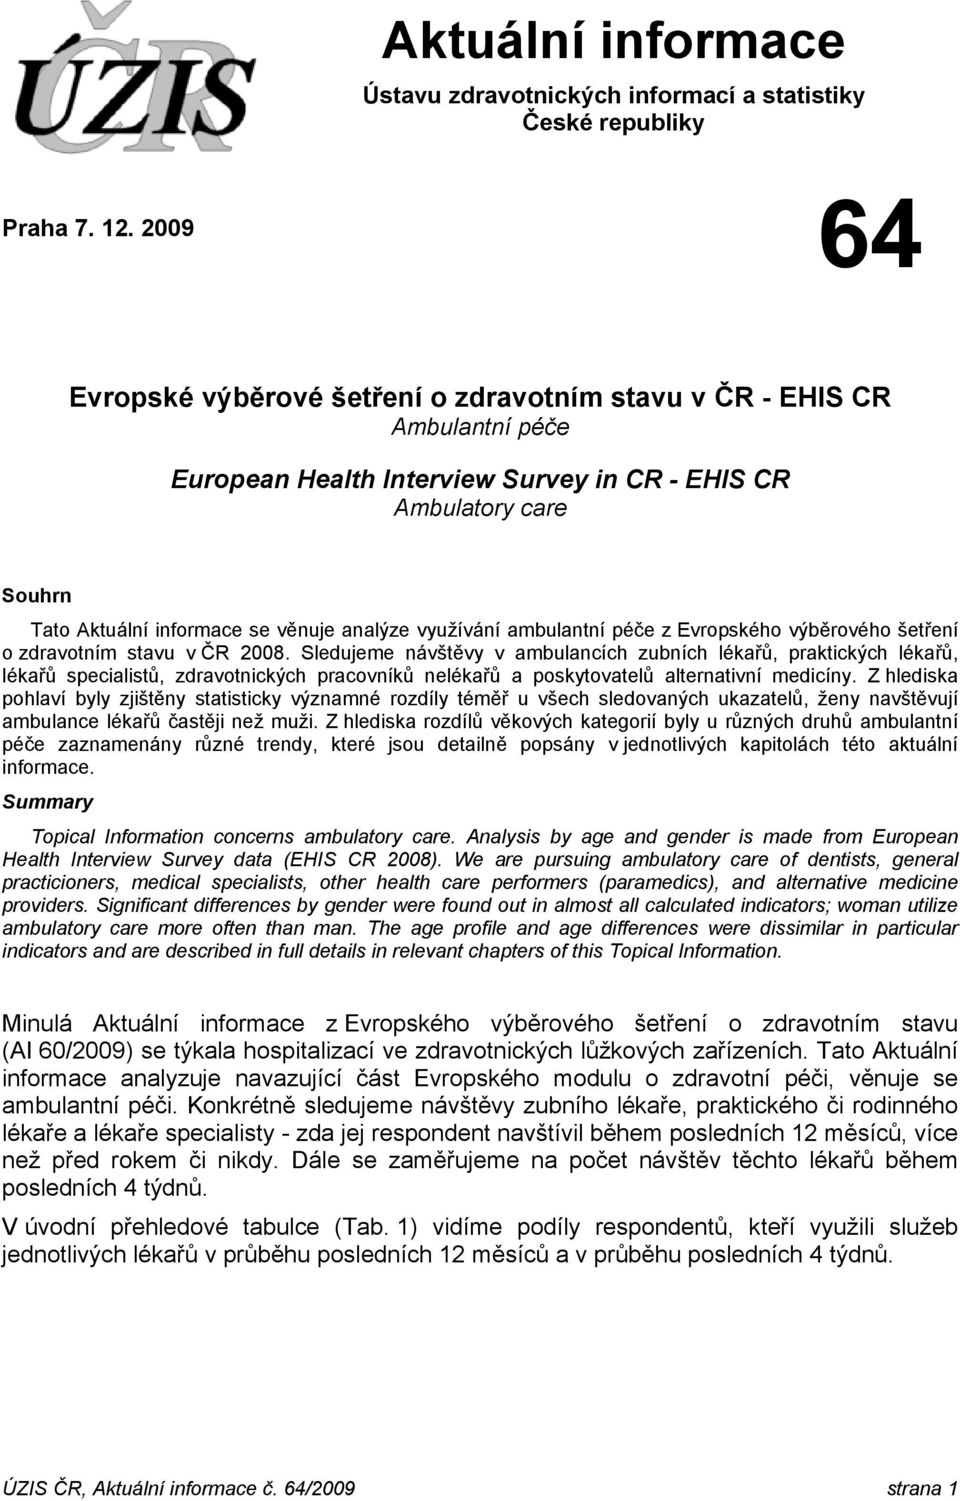 využívání ambulantní péče z Evropského výběrového šetření o zdravotním stavu v ČR 2008.